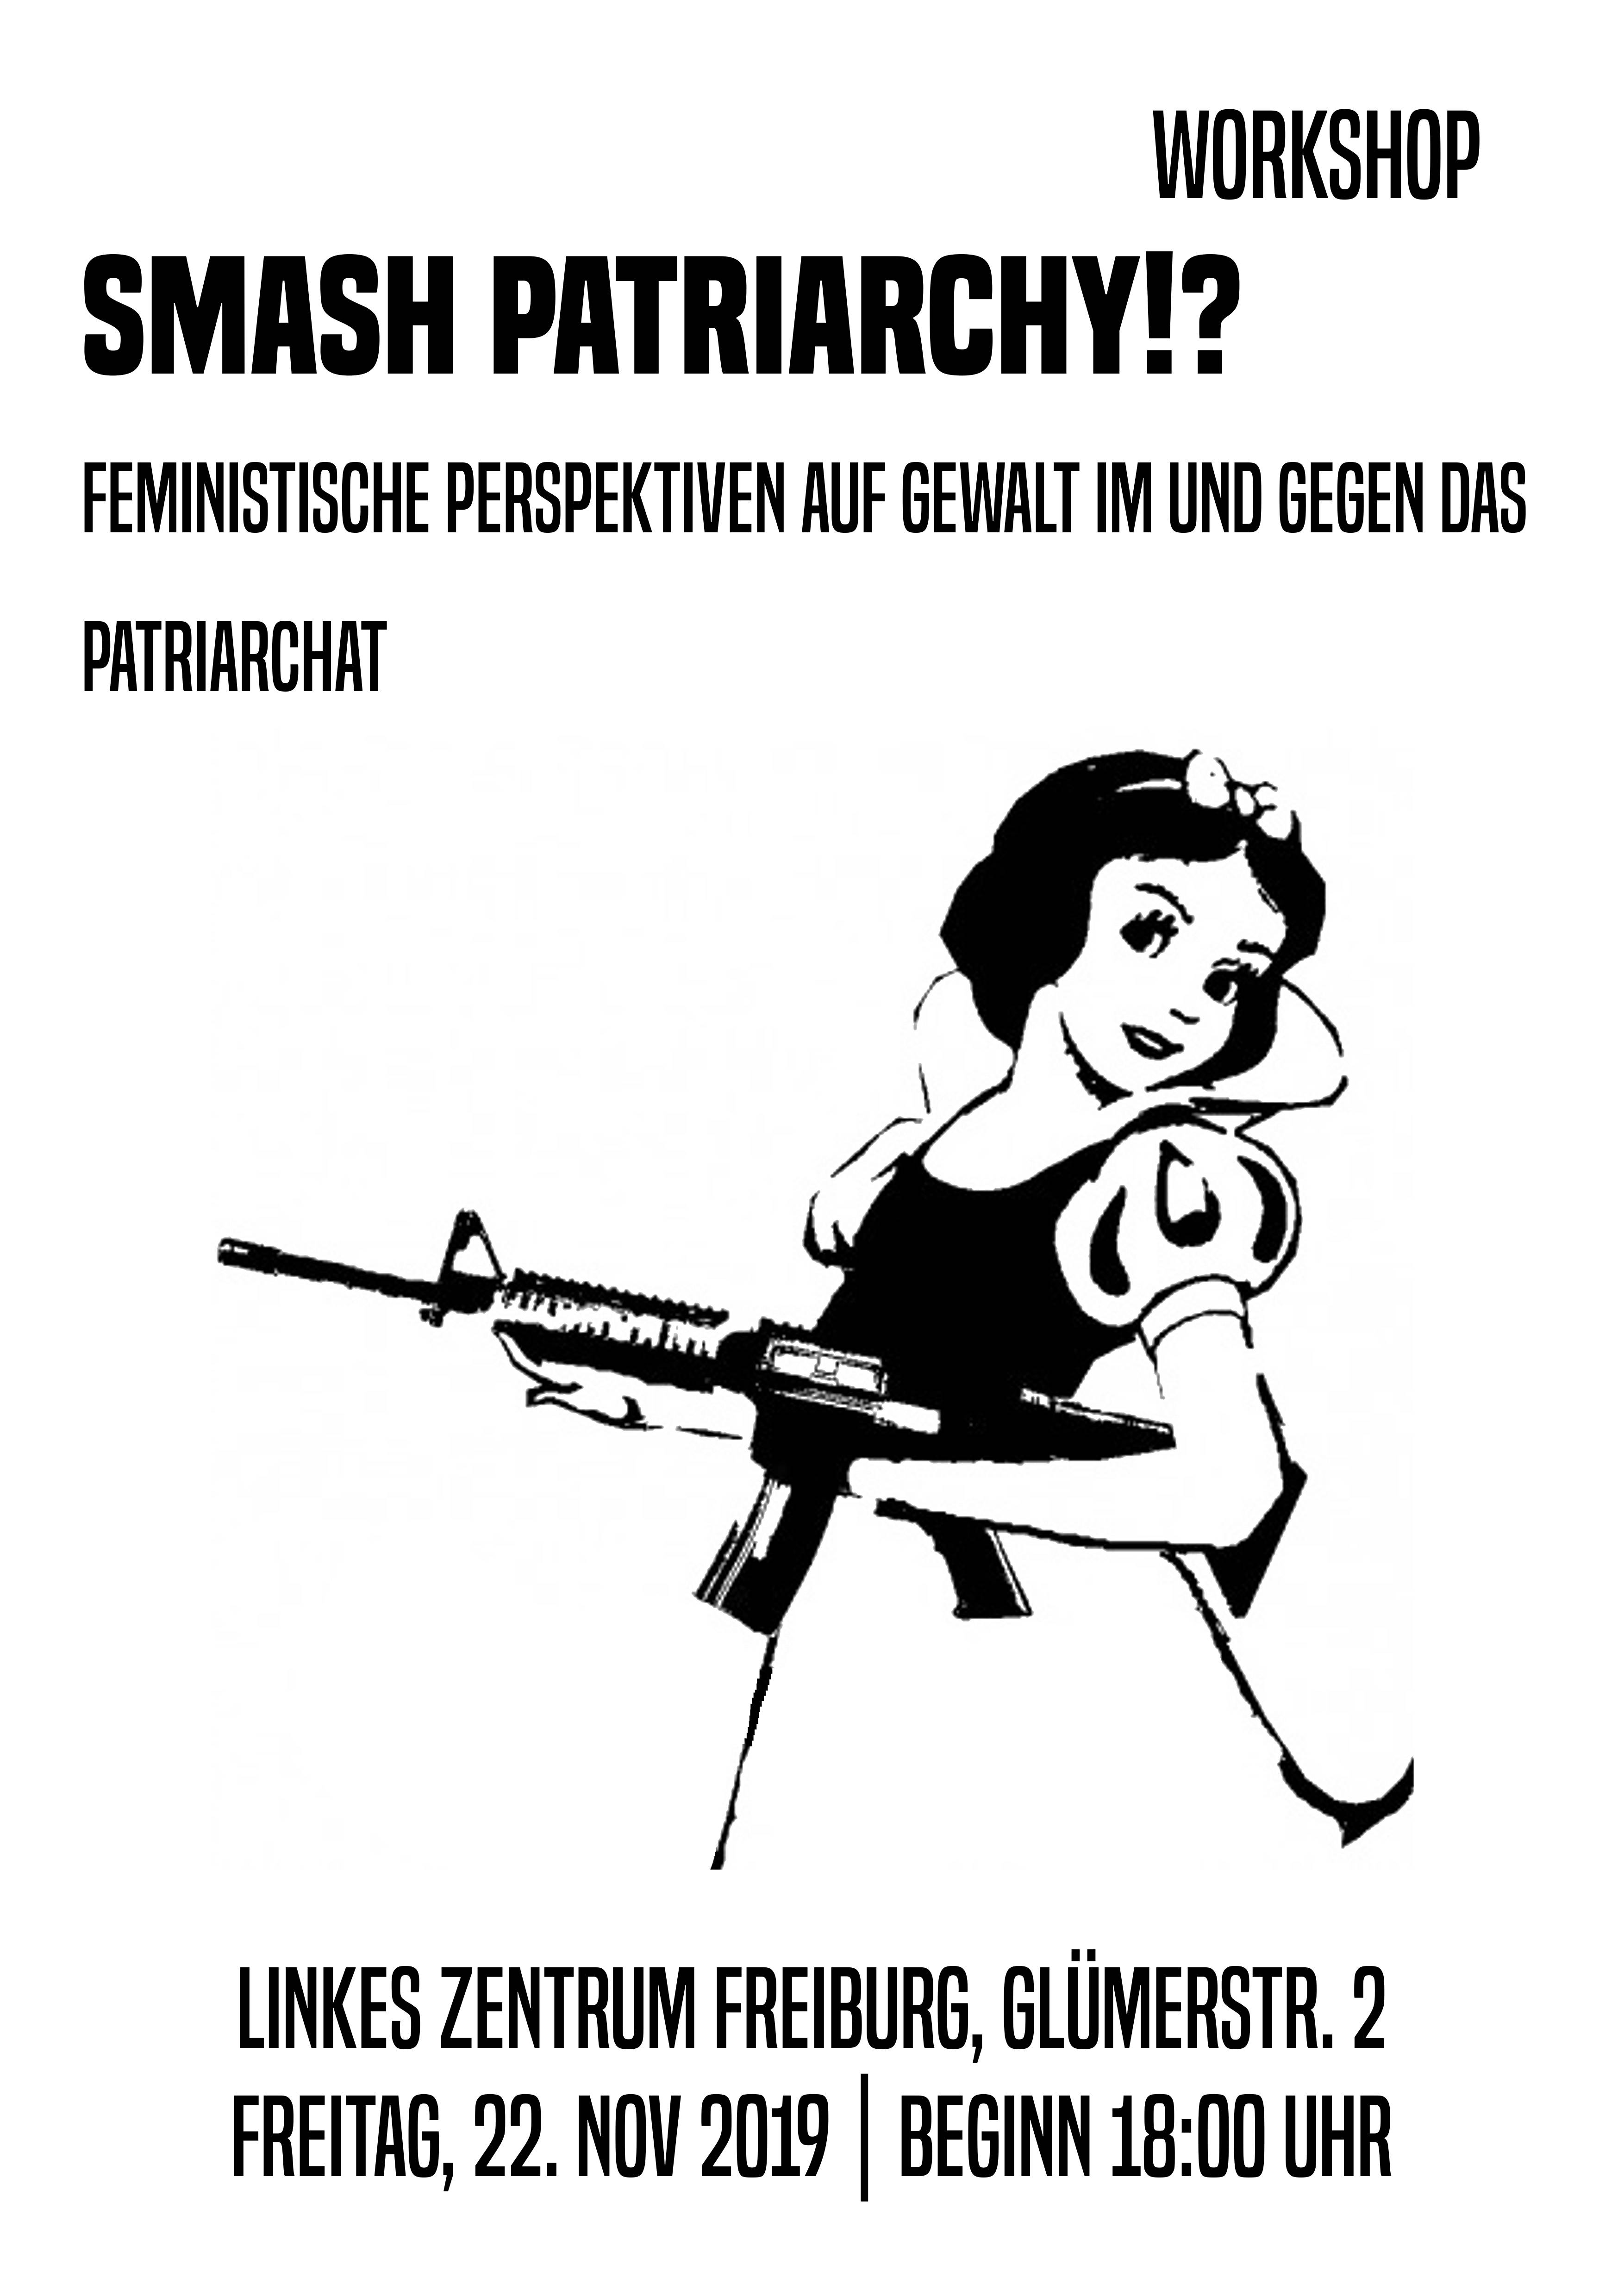 Smash patriarchy!? – Feministische Perspektiven auf Gewalt im und gegen das Patriarchat